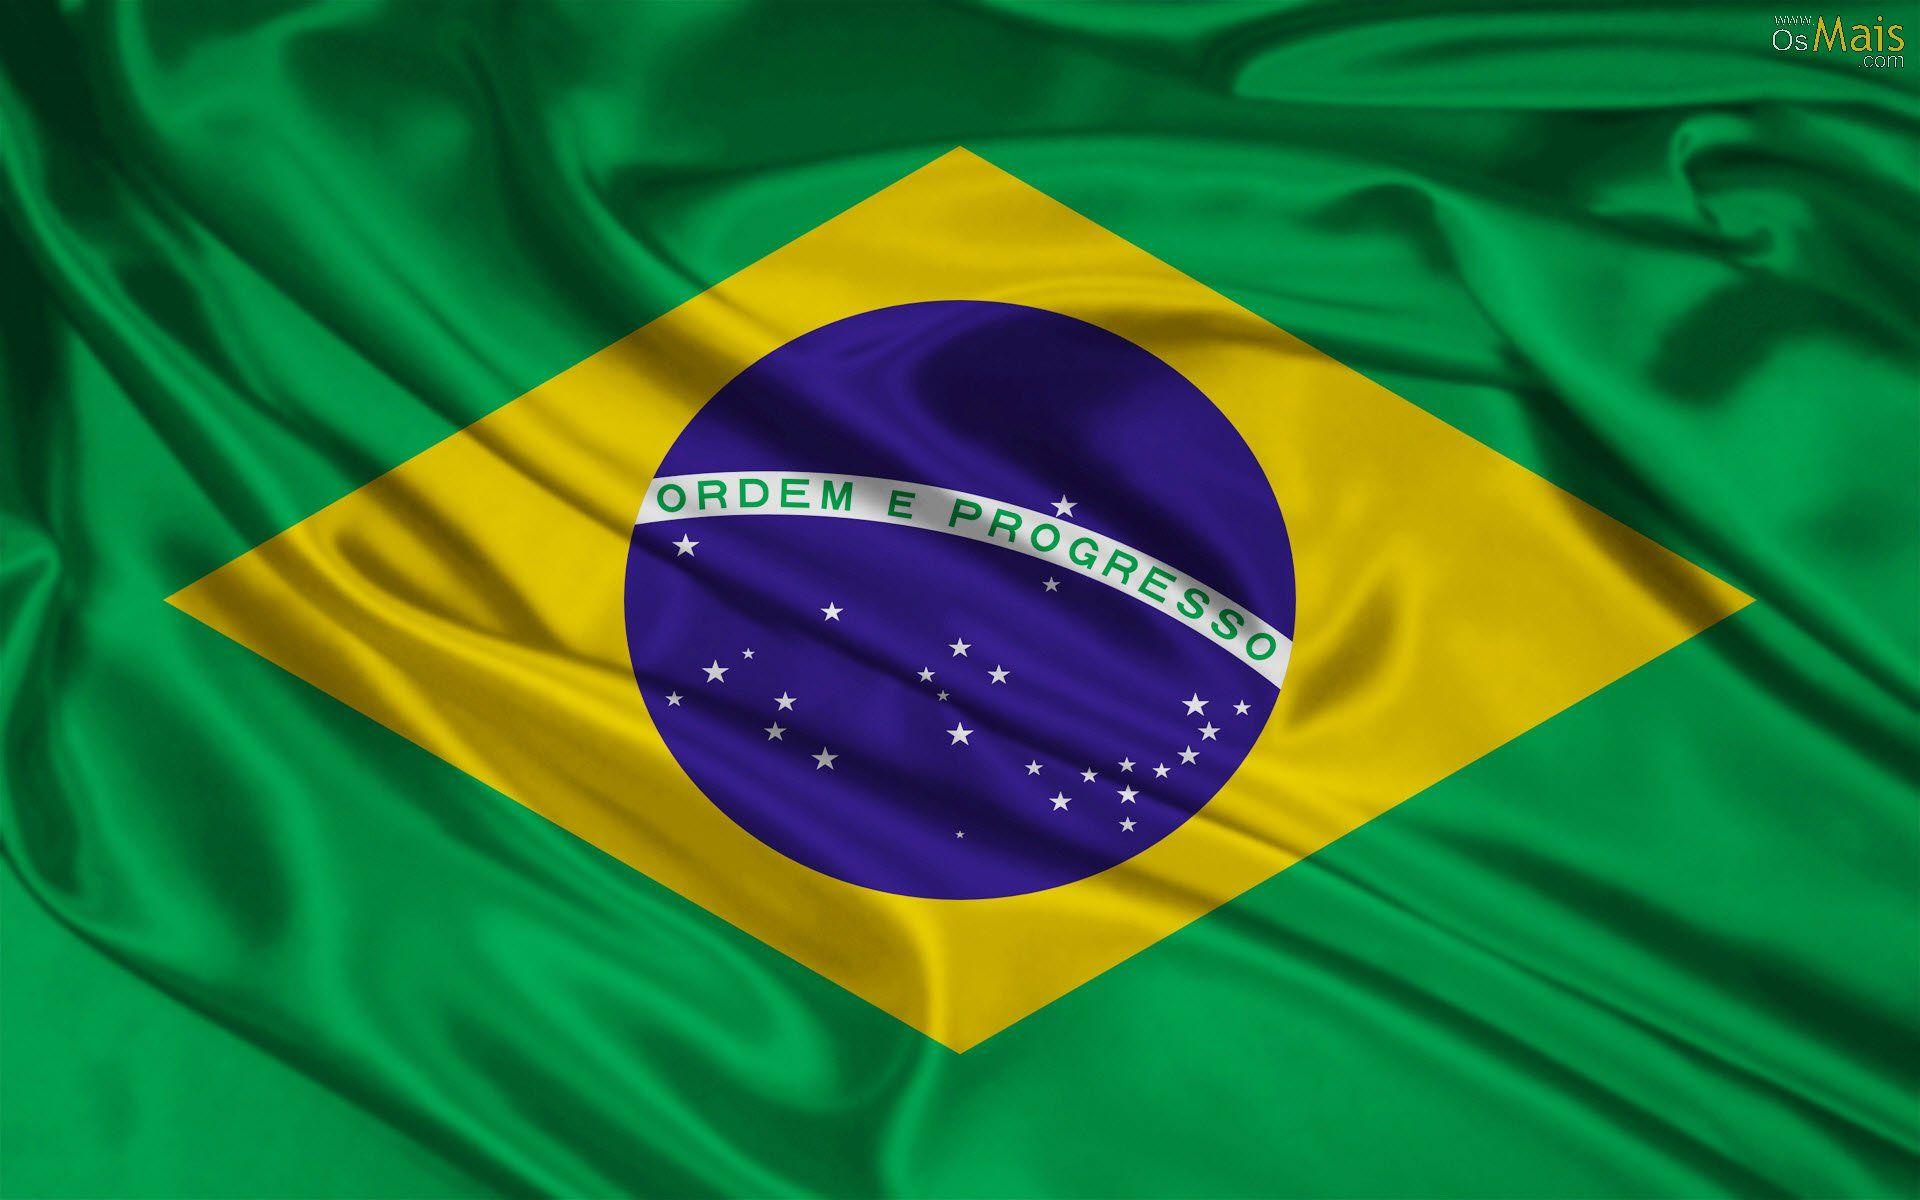 Fotos da Bandeira do Brasil e Fotos para Facebook, Whatsapp